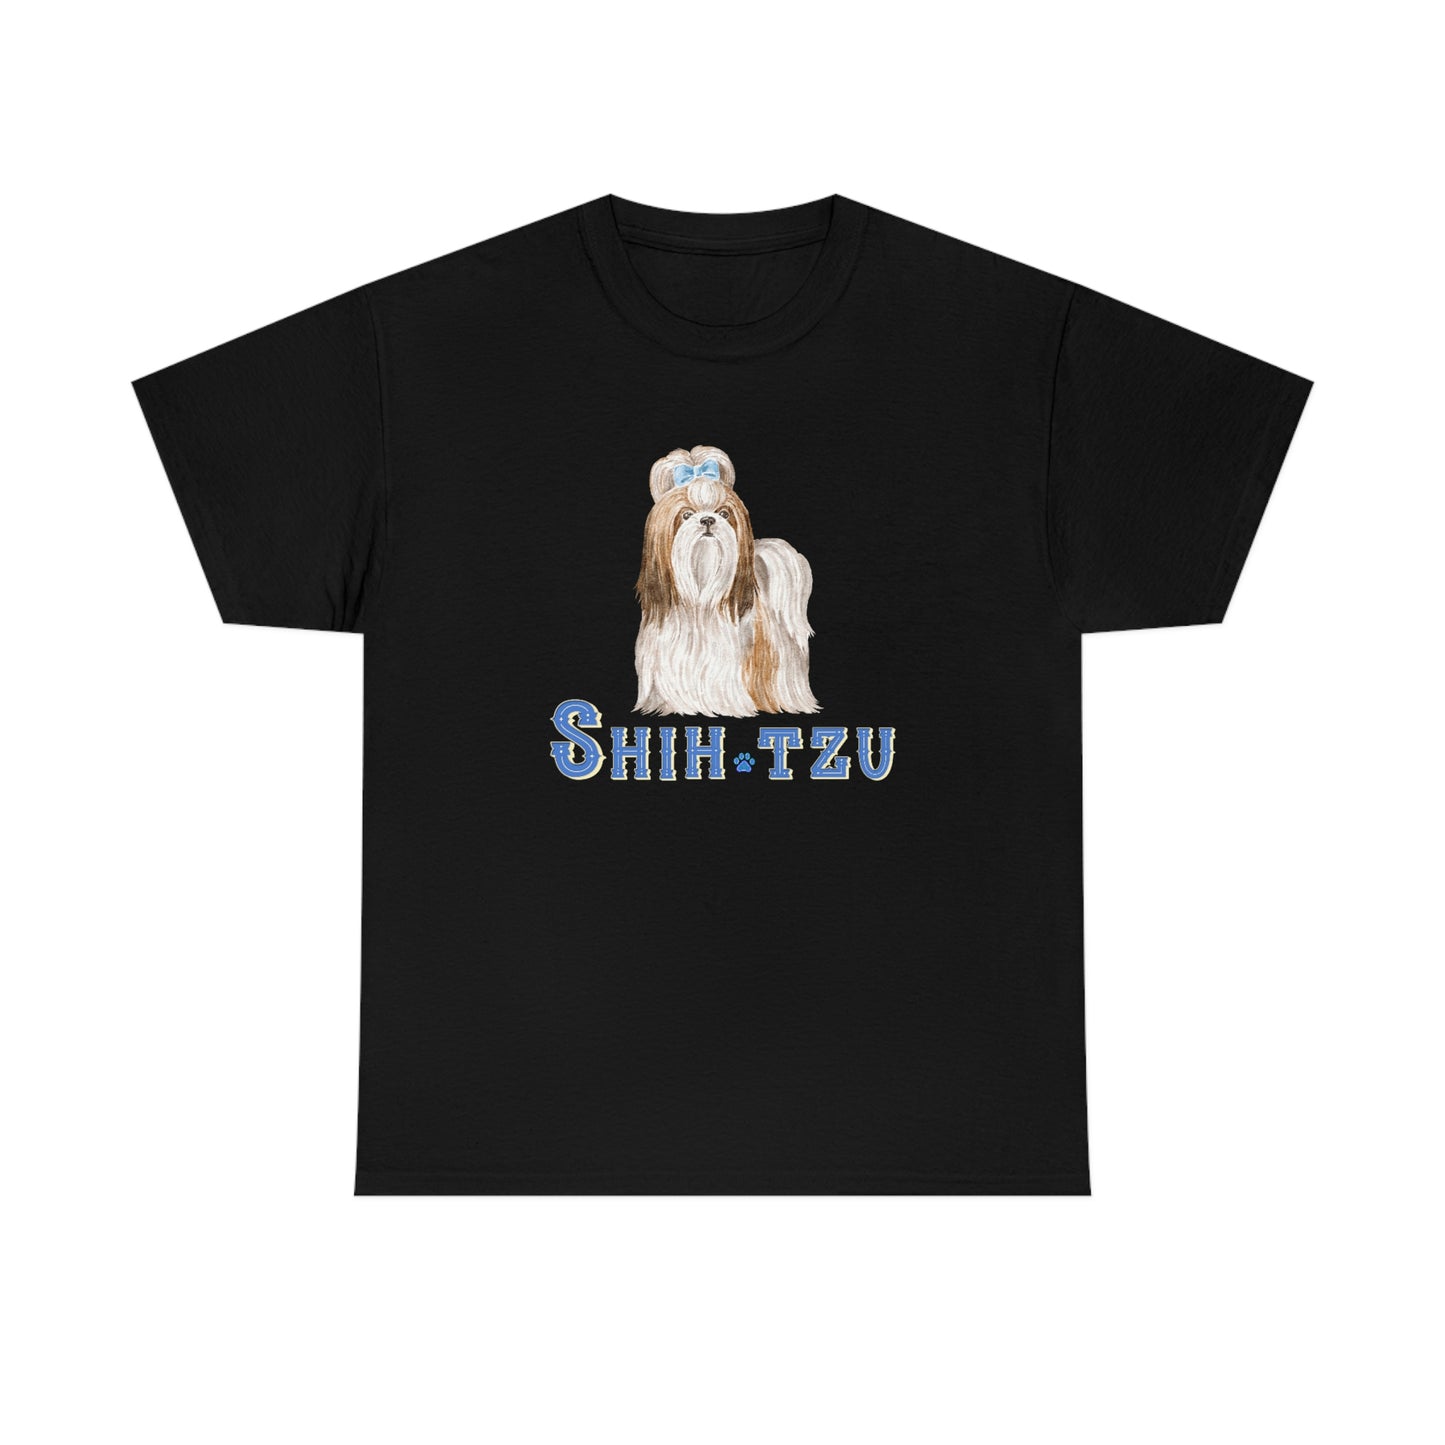 Beautiful Shih-Tzu Dog (Long Hair) design Cotton Tee